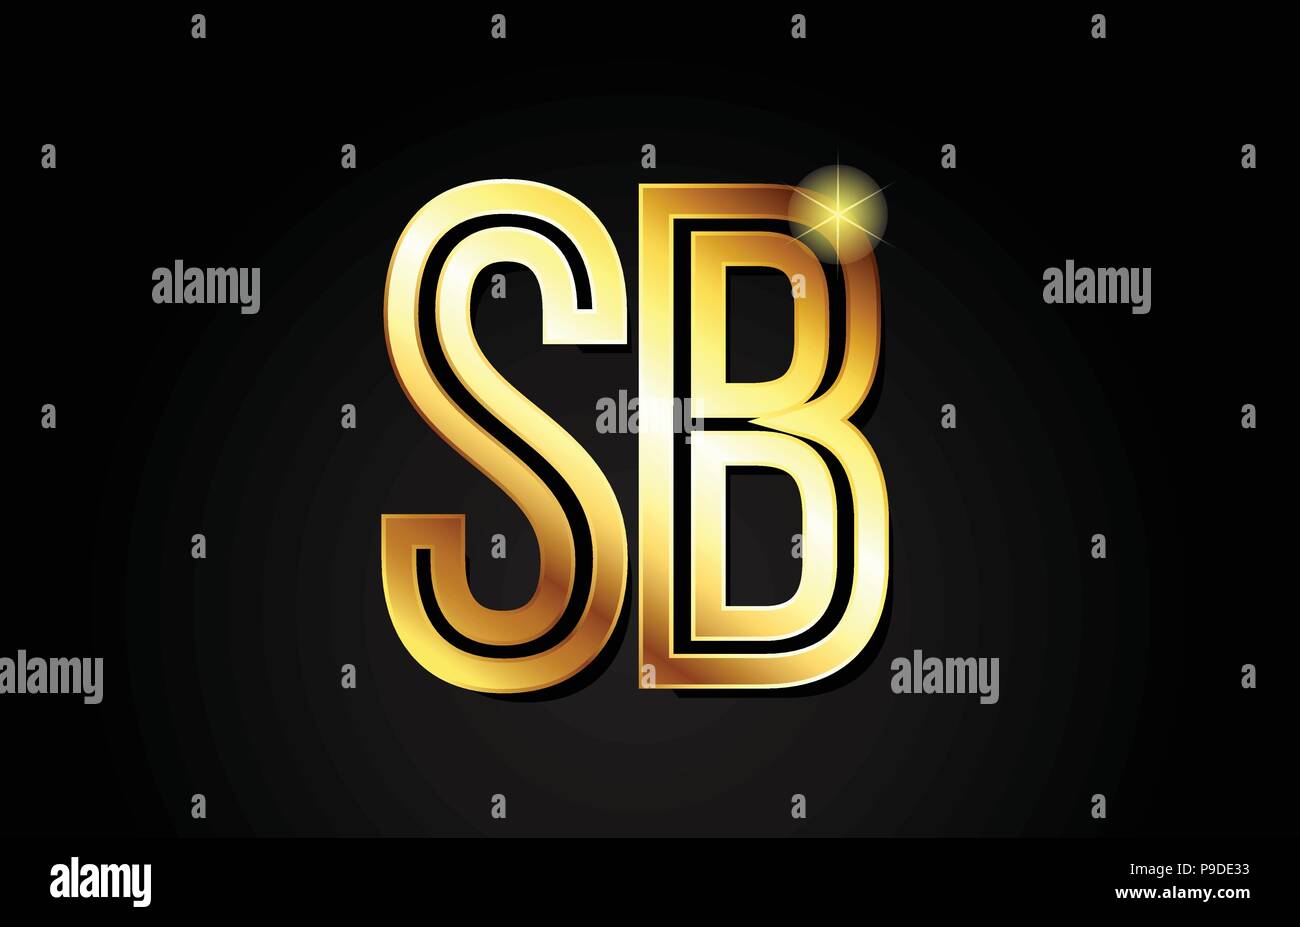 Gold Buchstaben sb s b logo Kombination design geeignet für ein Unternehmen oder ein Geschäft Stock Vektor